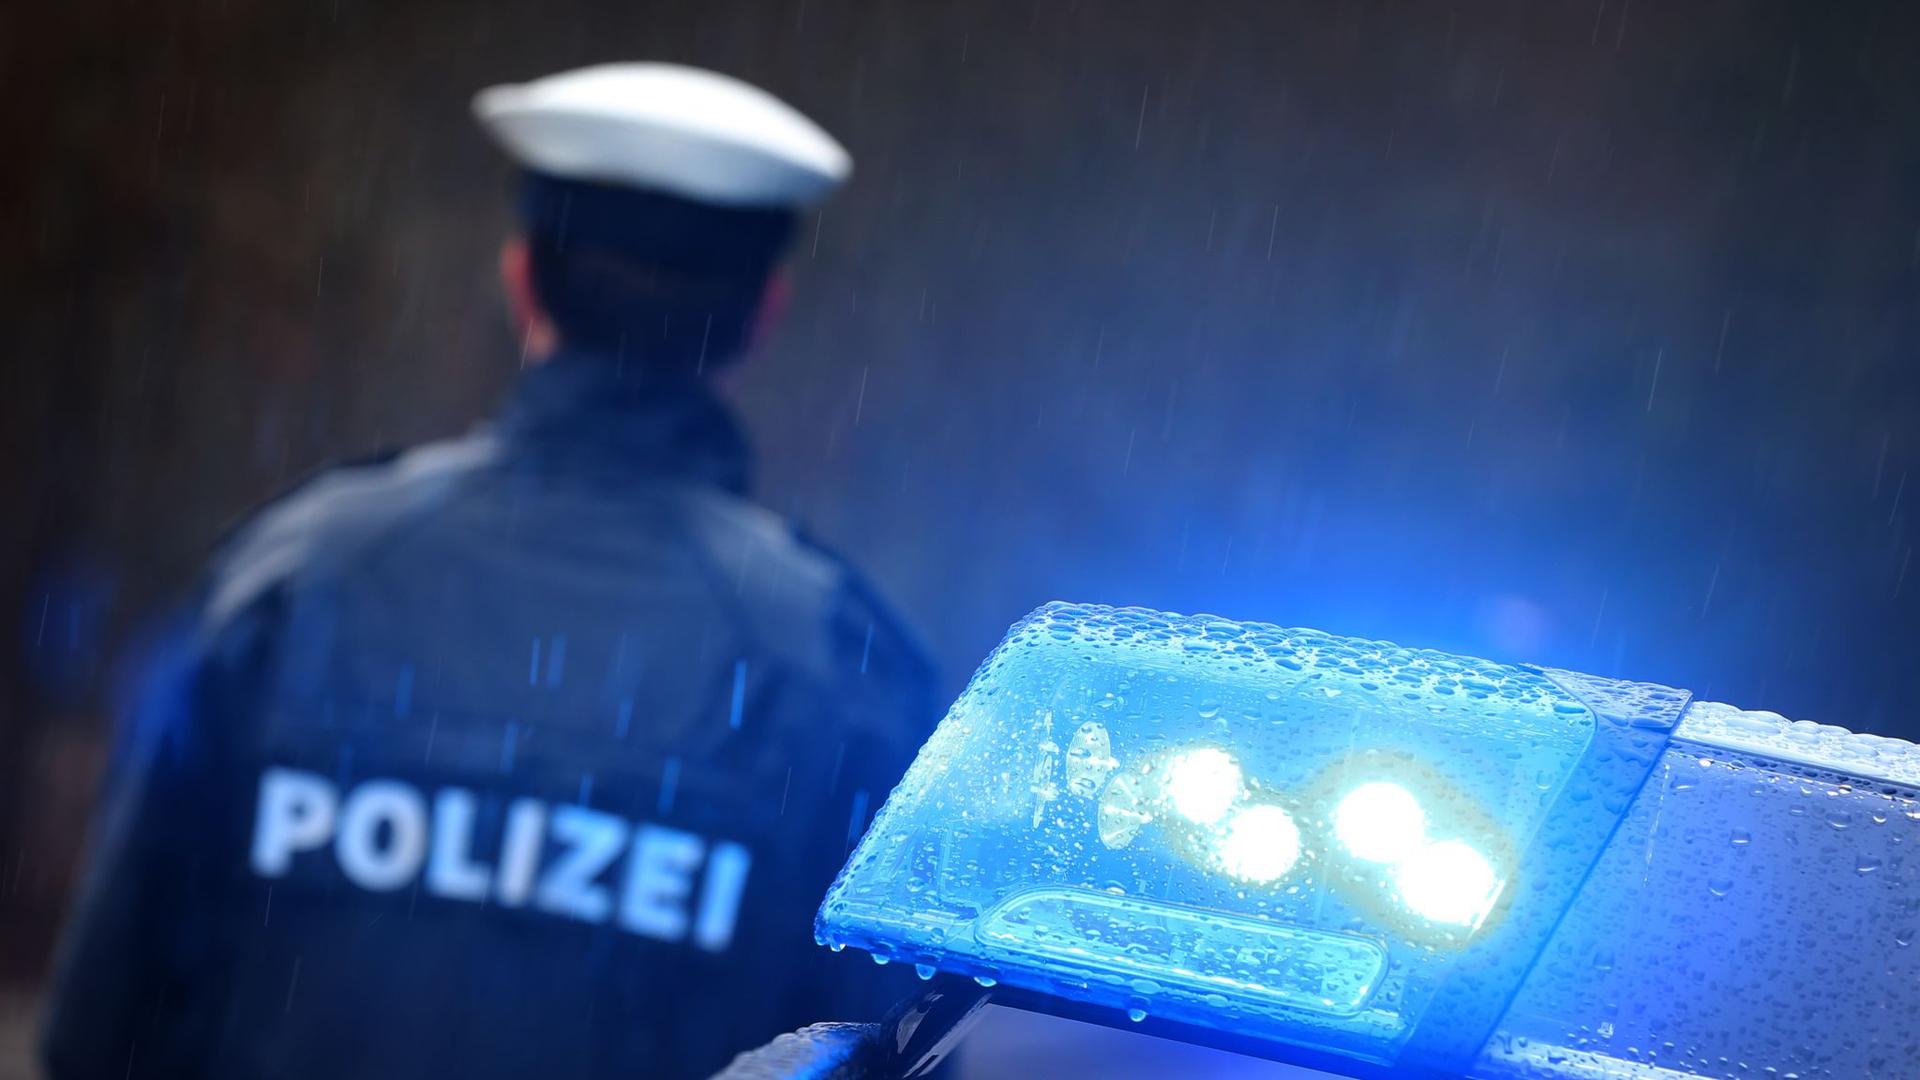 Ein Polizist steht im Regen vor einem Streifenwagen dessen Blaulicht aktiviert ist.